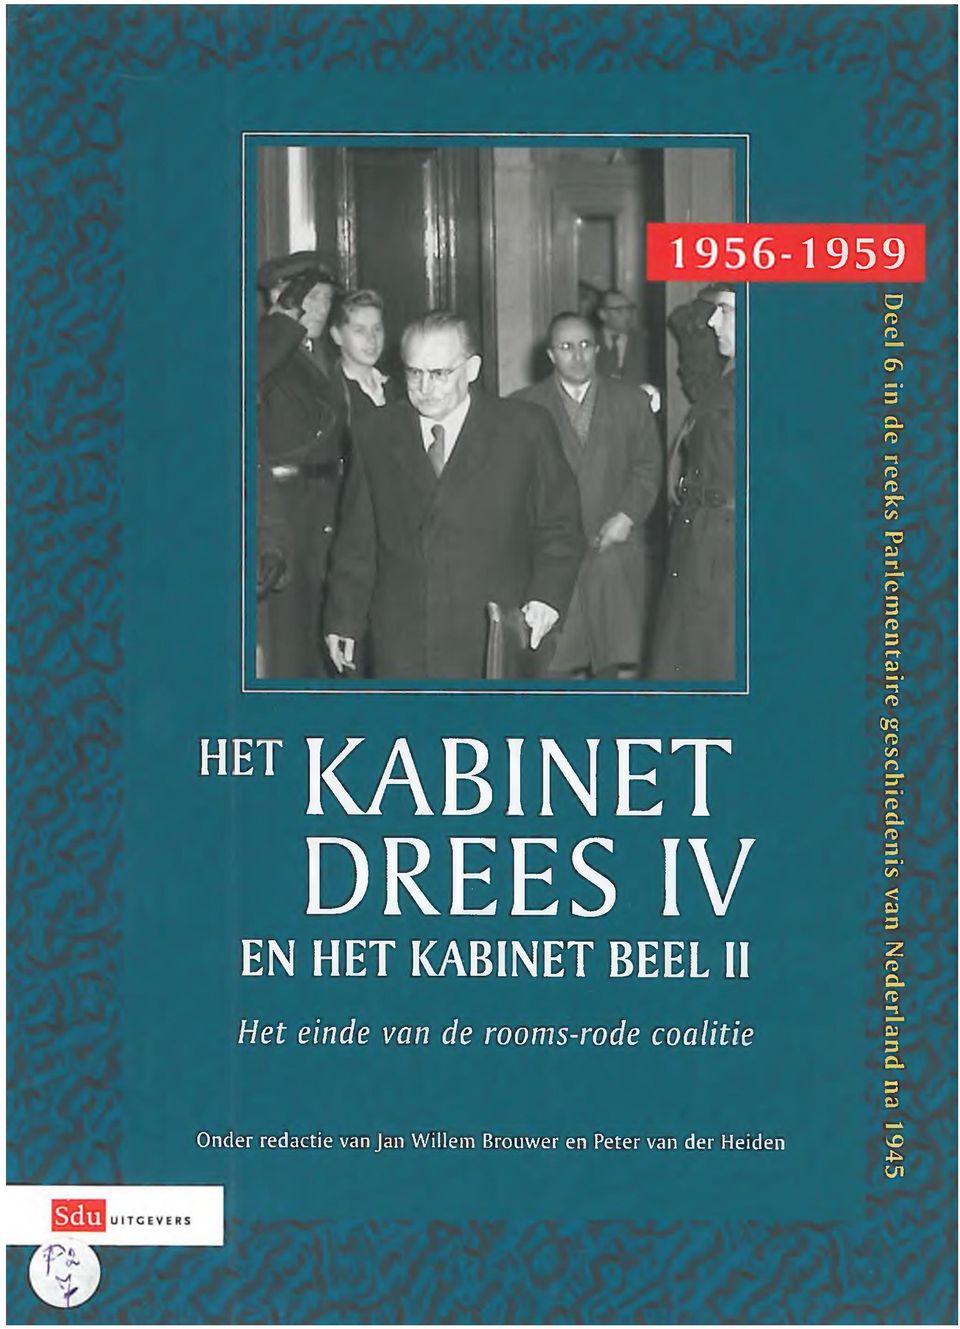 Willem Brouwer en Peter van der Heiden 1959 Deel 6 in